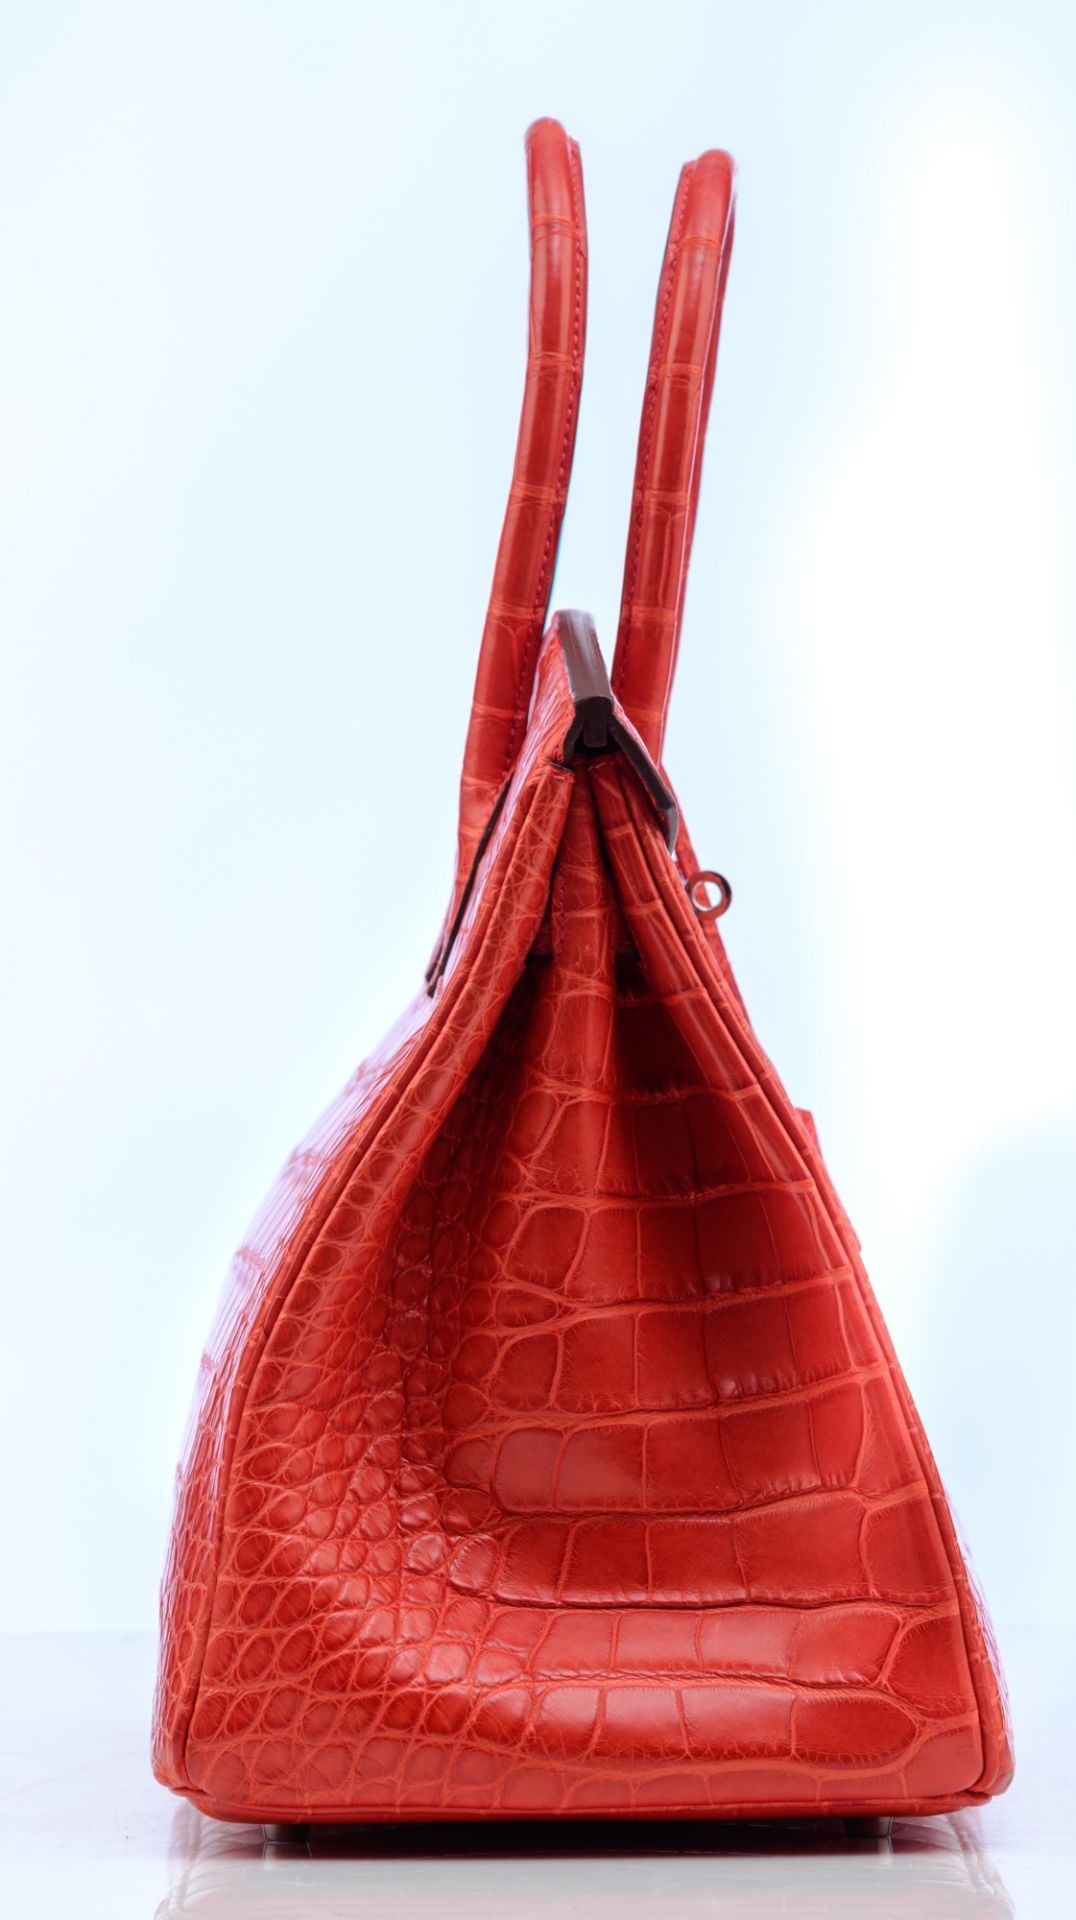 HERMÈS, Birkin 35 handbag, Geranium alligator mississippiensis matte leather, with palladium hardwar - Image 6 of 22